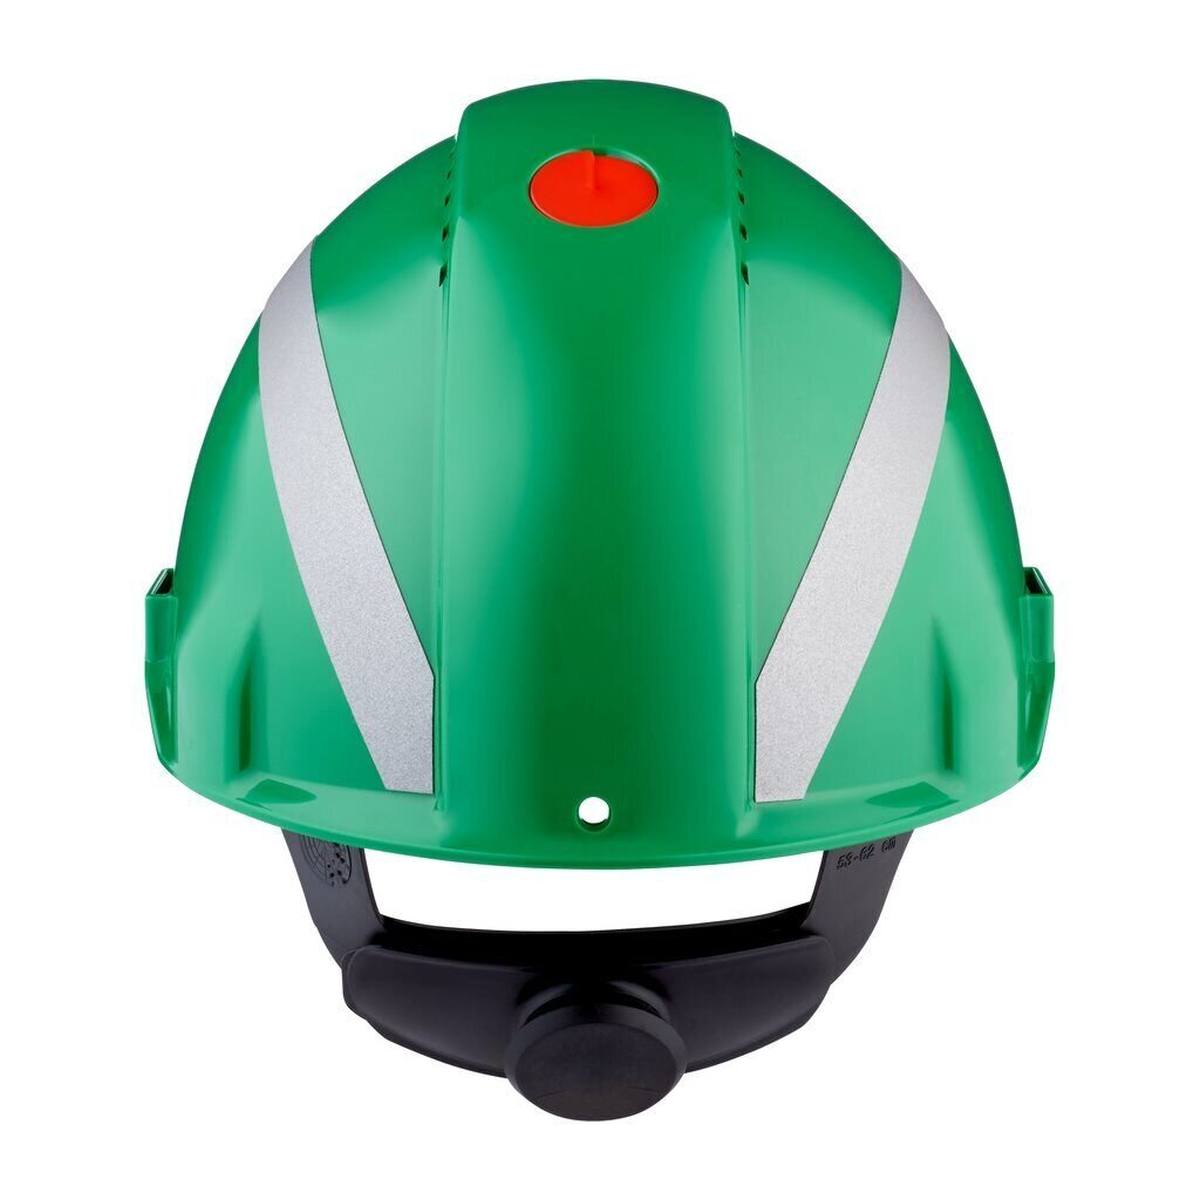 3M Casco de seguridad G3000 con indicador UV, verde, ABS, cierre de trinquete ventilado, banda de sudor de plástico, pegatina reflectante